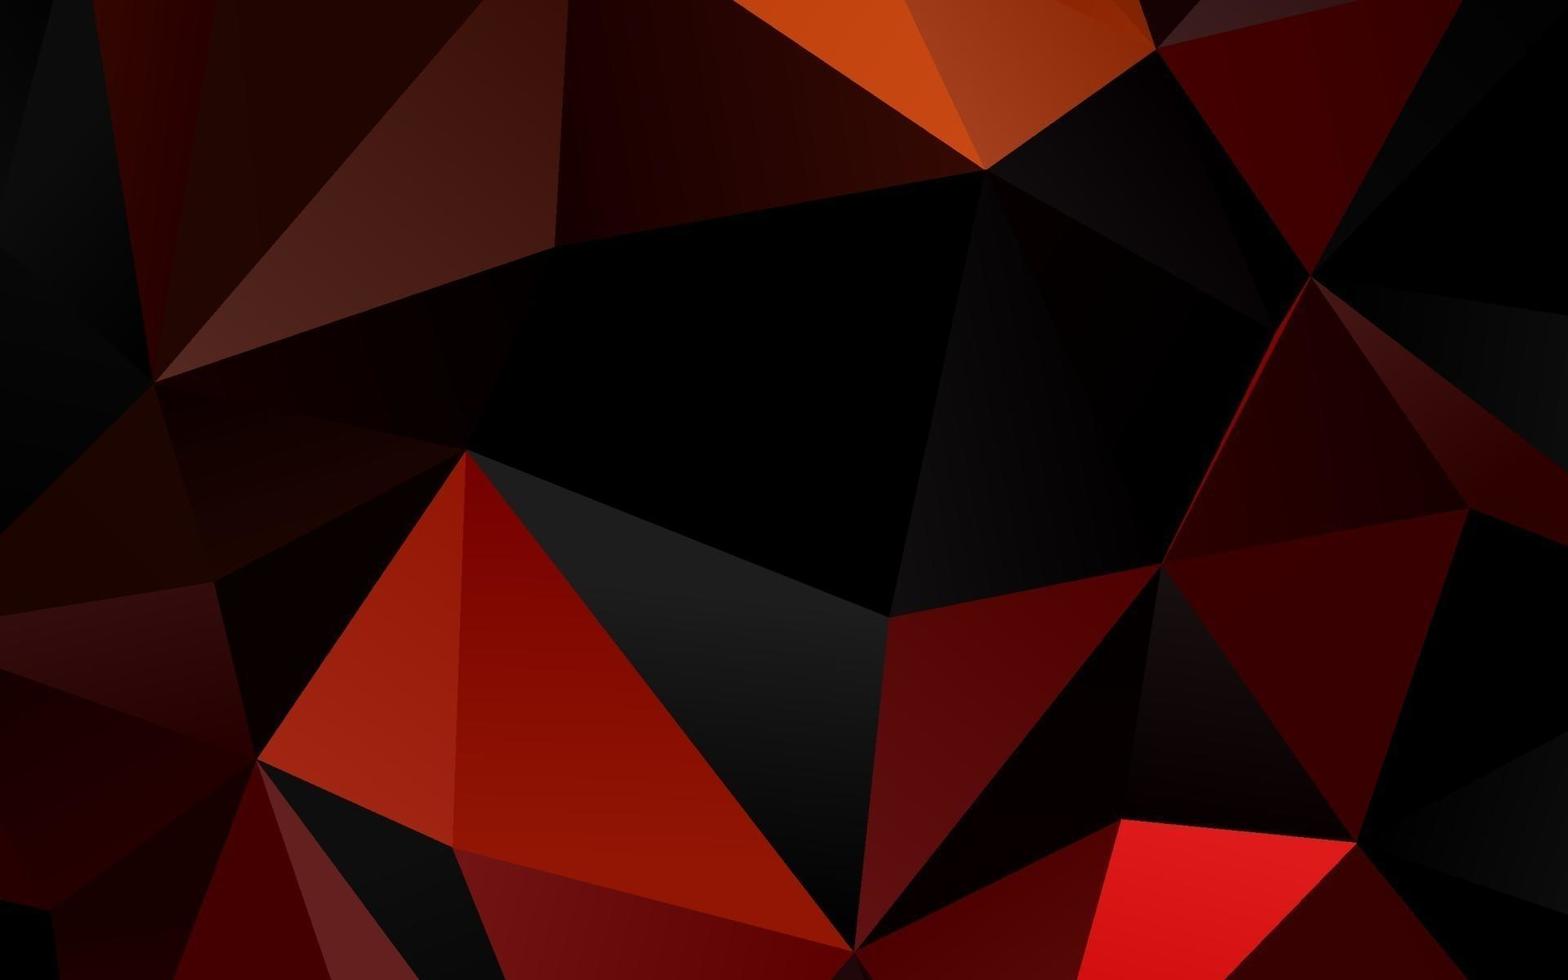 couverture polygonale abstraite de vecteur rouge clair.